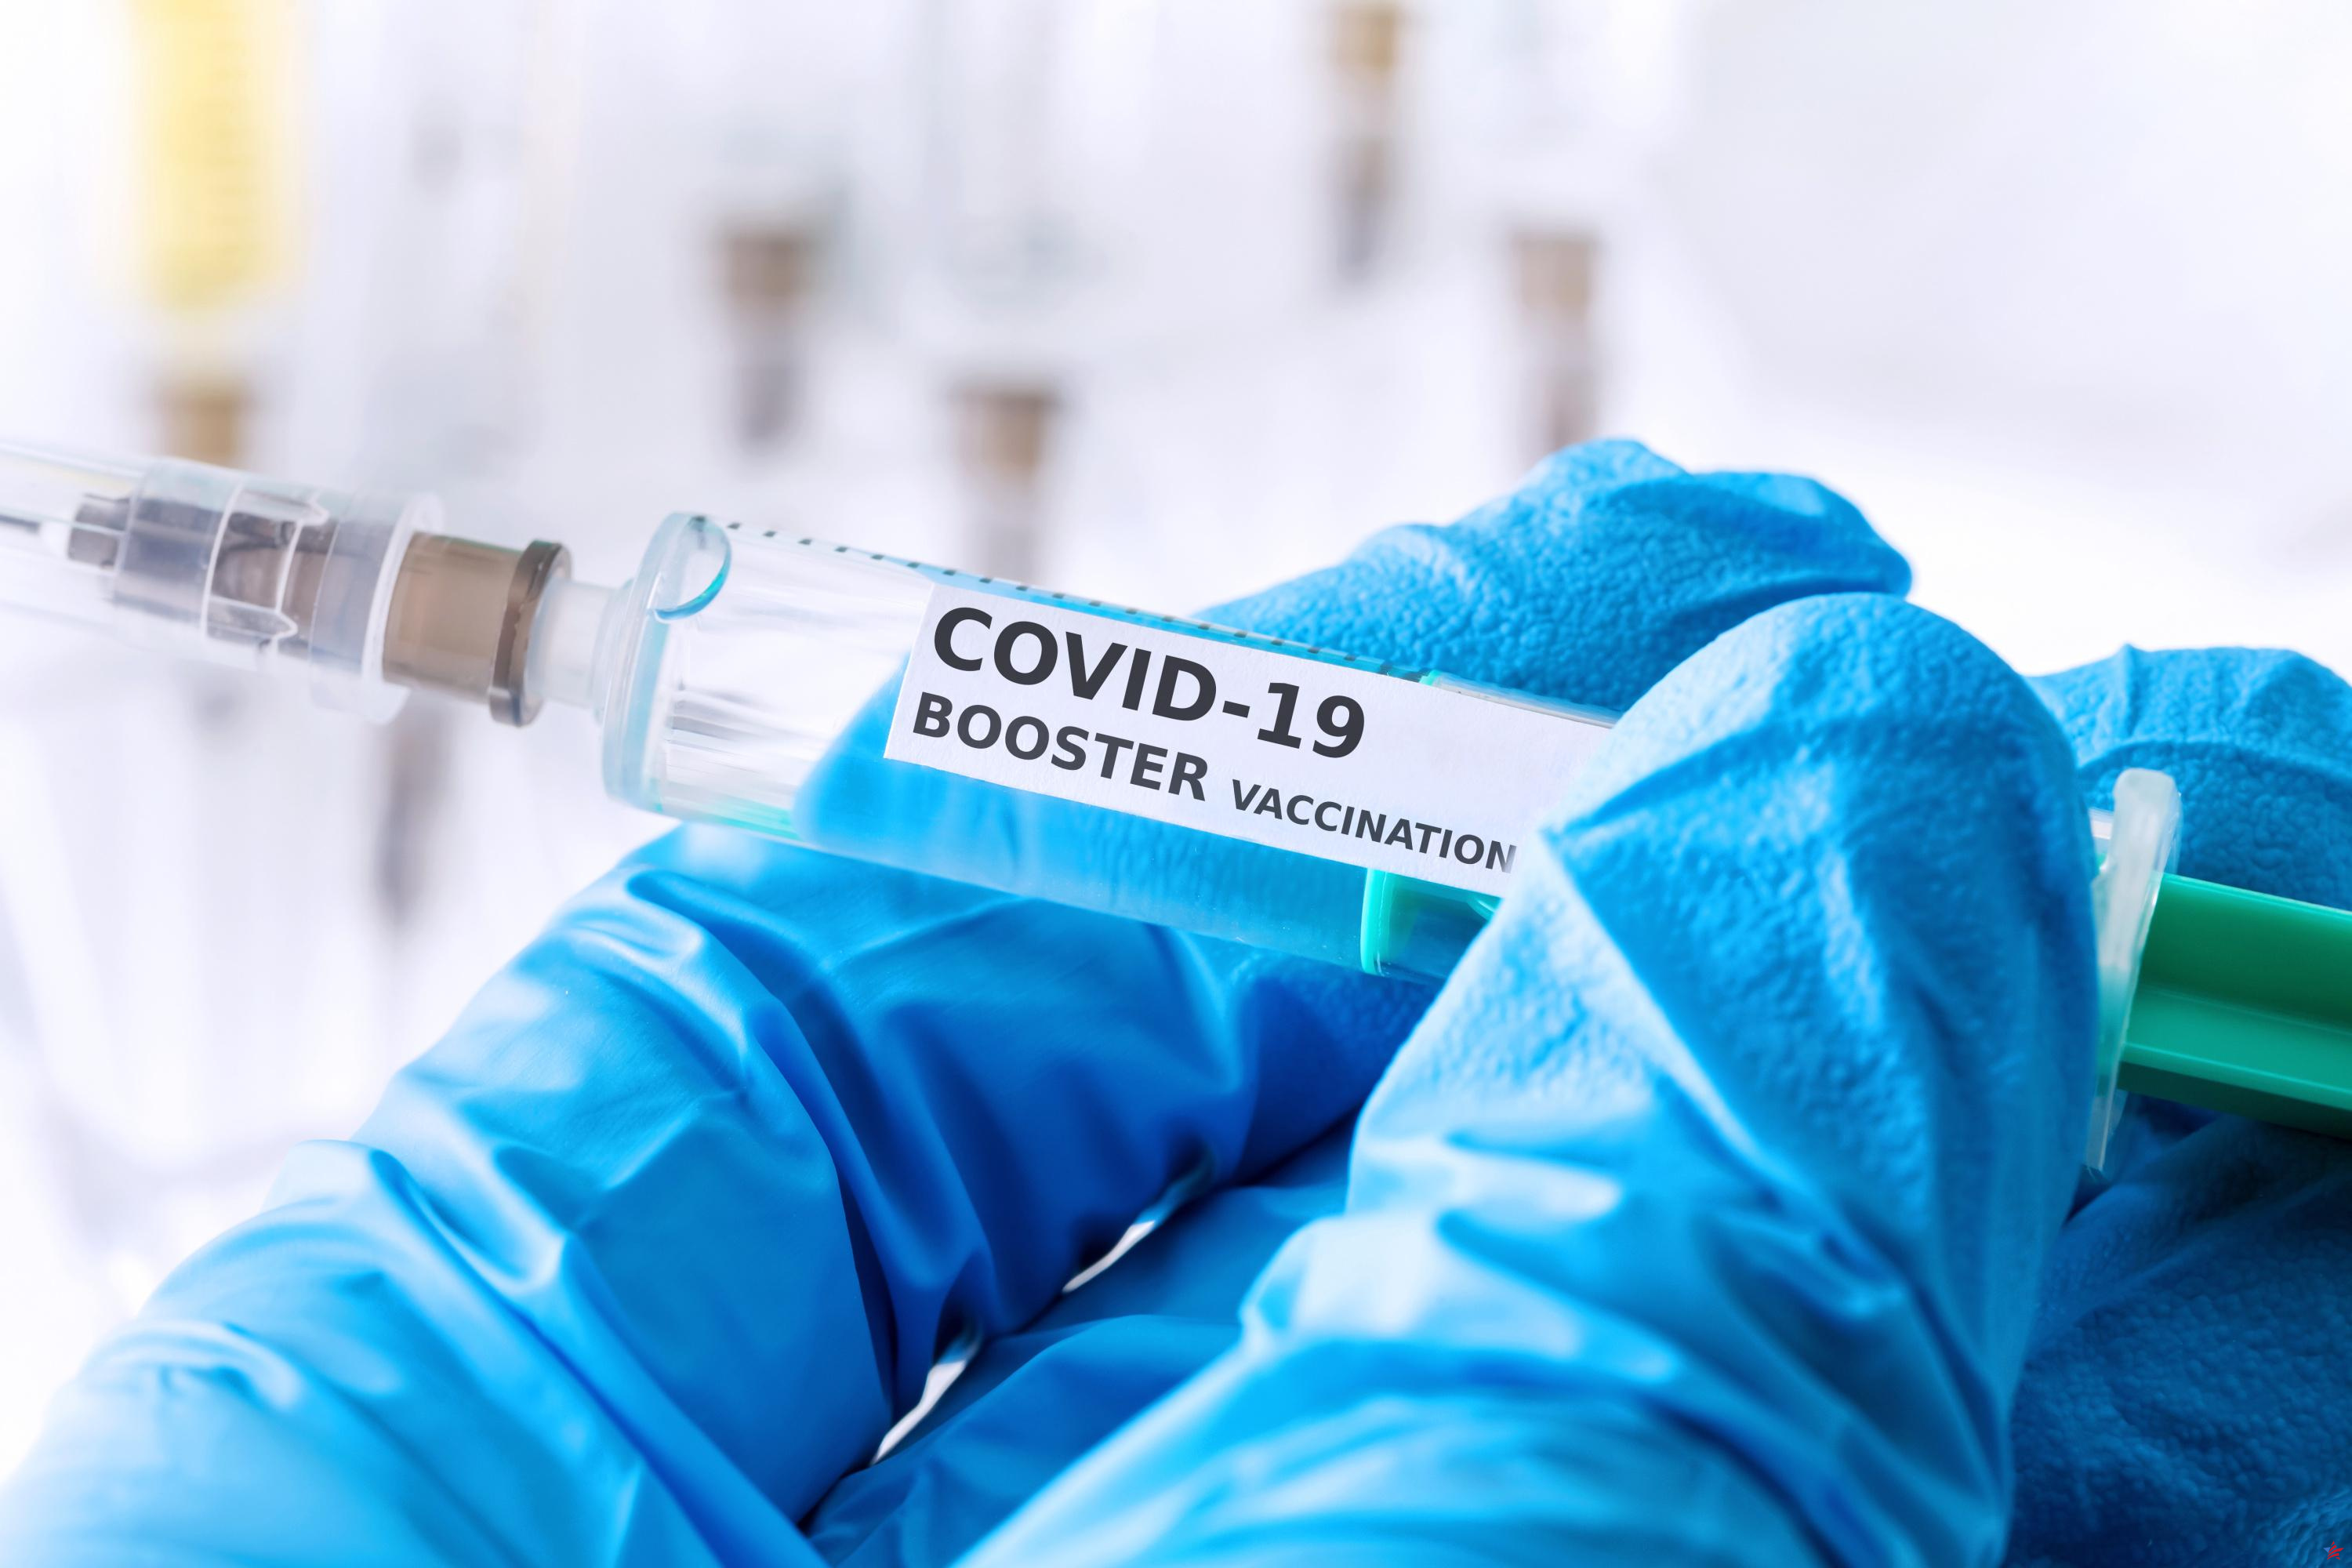 Covid-19: un paciente muere tras 613 días de contaminación